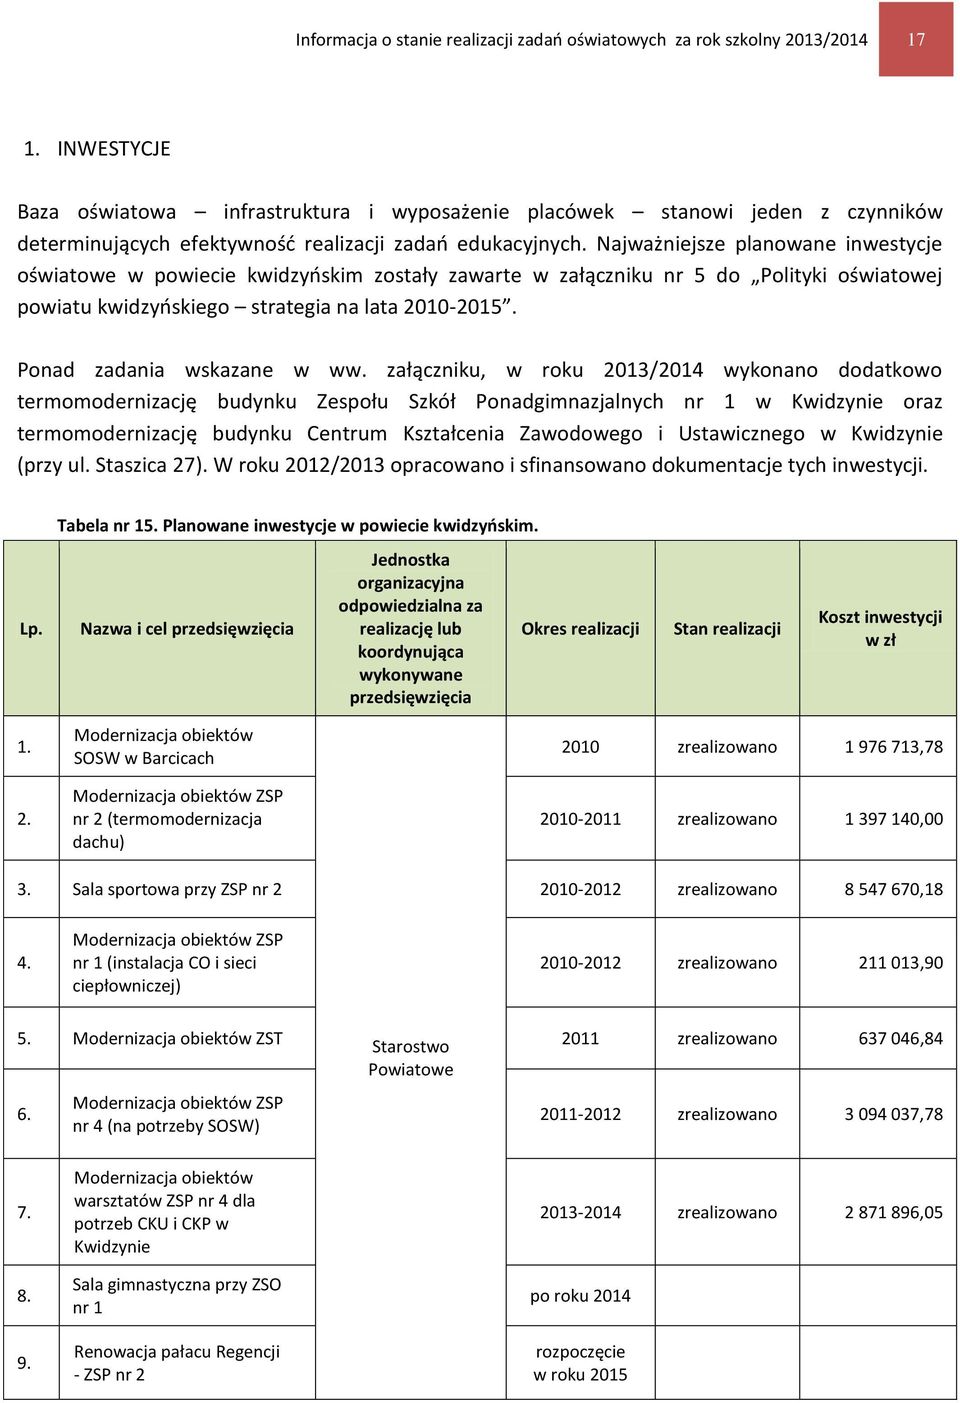 Najważniejsze planowane inwestycje oświatowe w powiecie kwidzyńskim zostały zawarte w załączniku nr 5 do Polityki oświatowej powiatu kwidzyńskiego strategia na lata 2010-2015.